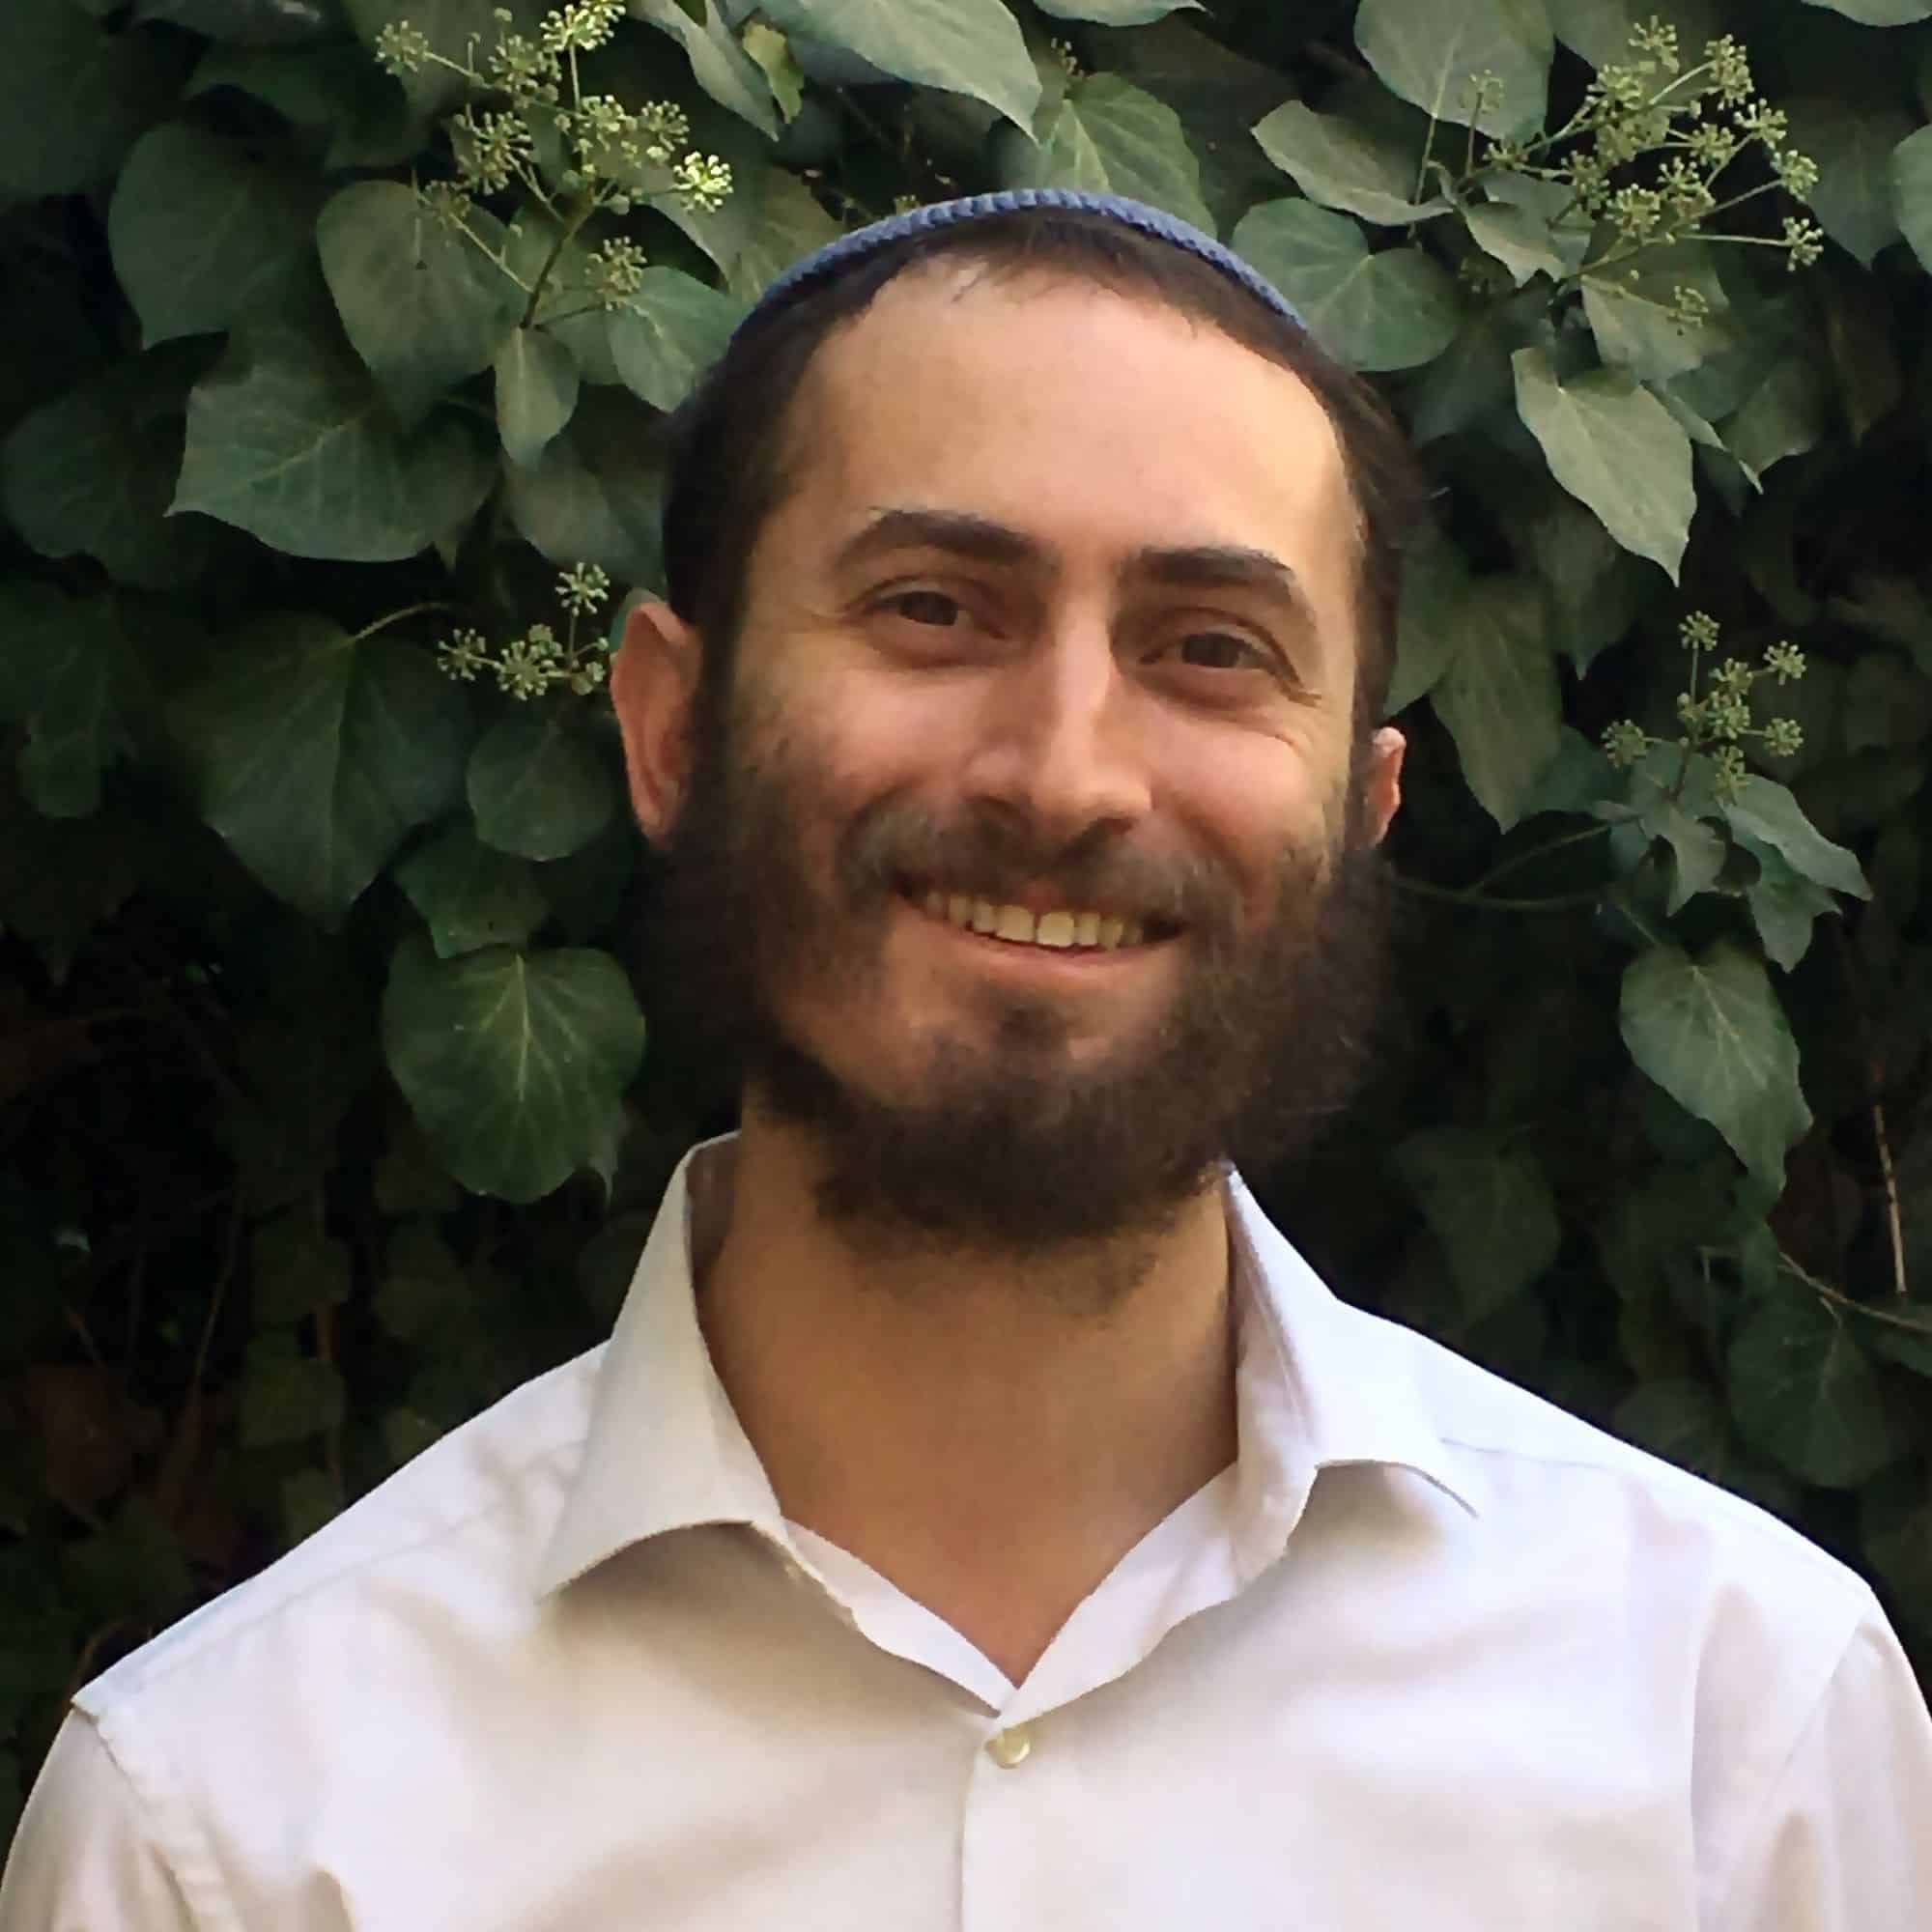 A photo of Rabbi Yonatan Neril